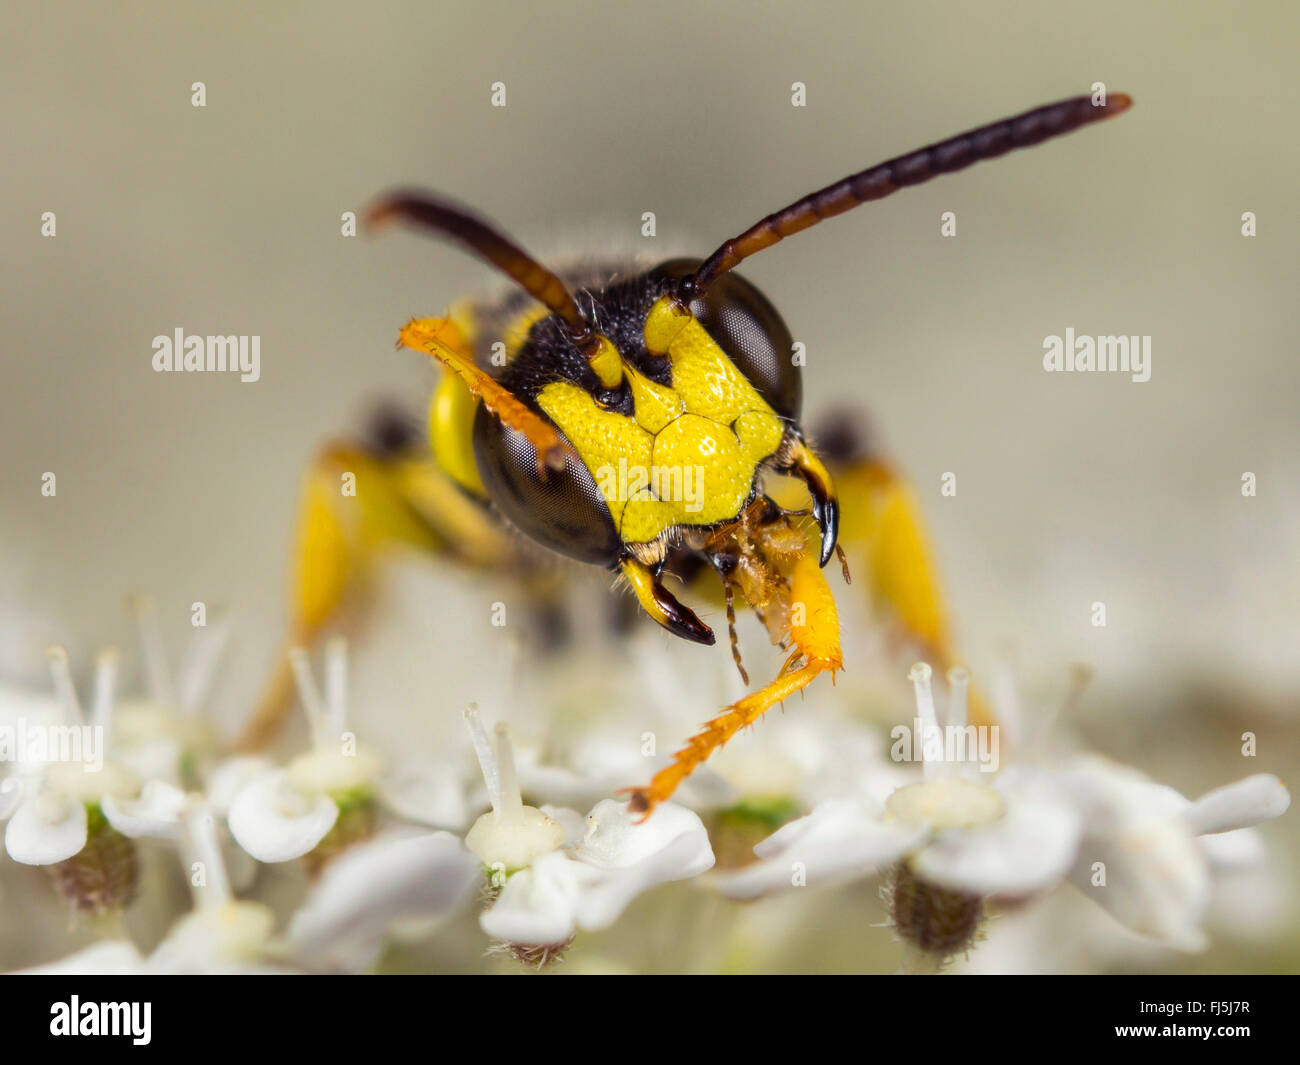 Sand-tailed digger wasp (Cerceris arenaria), homme le toilettage sur la carotte sauvage (Daucus carota), Allemagne Banque D'Images